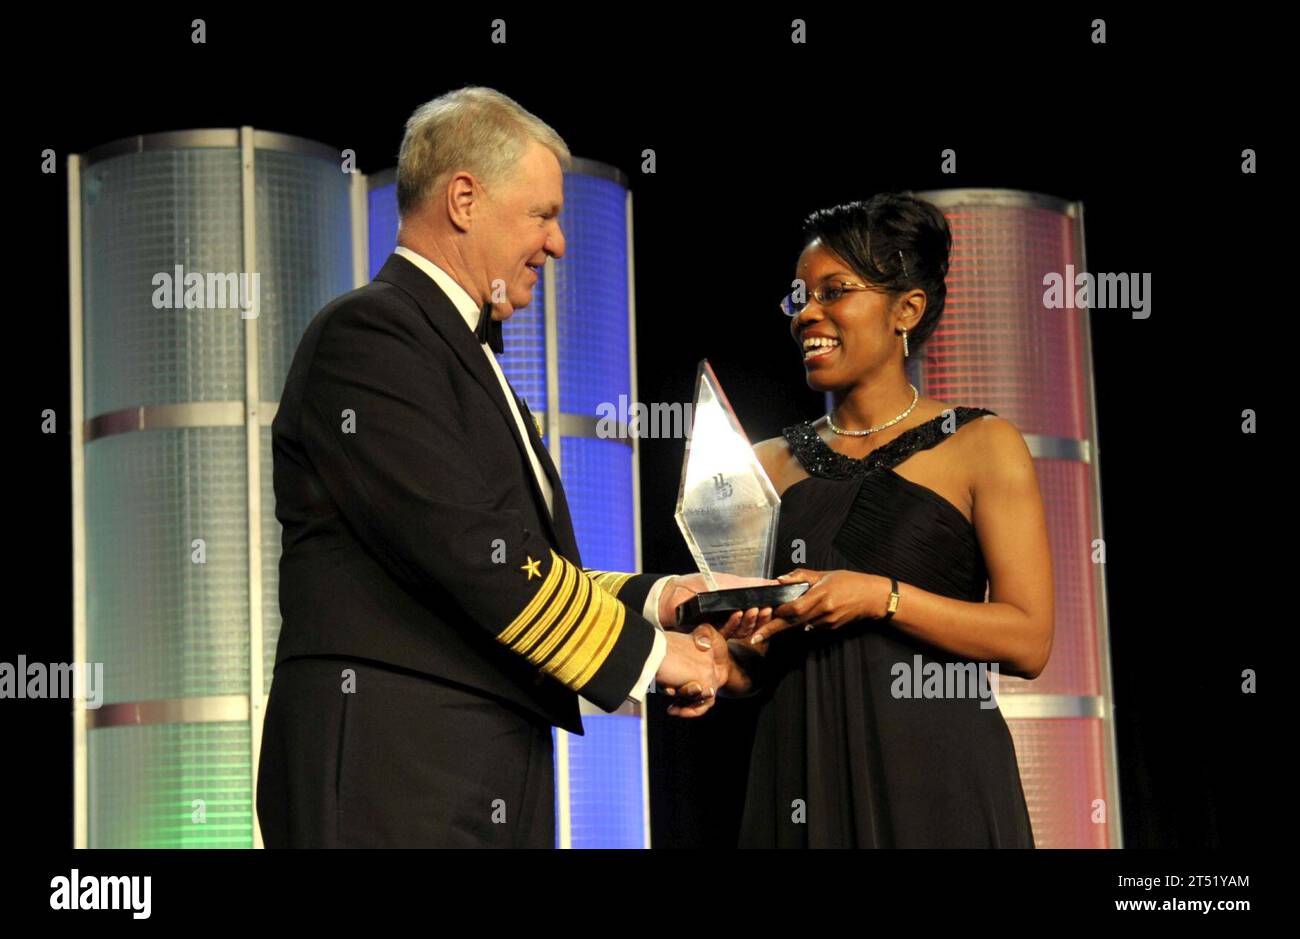 1002203548M-067 BALTIMORE (le 20 février 2010) le chef des opérations navales (CNO), l'amiral Gary Rougehead, à gauche, honore Steffanie B. Easter avec le prix de l'ingénieur noir de l'année pour ses réalisations professionnelles dans le gouvernement lors du 24e gala de l'ingénieur noir de l'année à Baltimore, Maryland Marine Banque D'Images